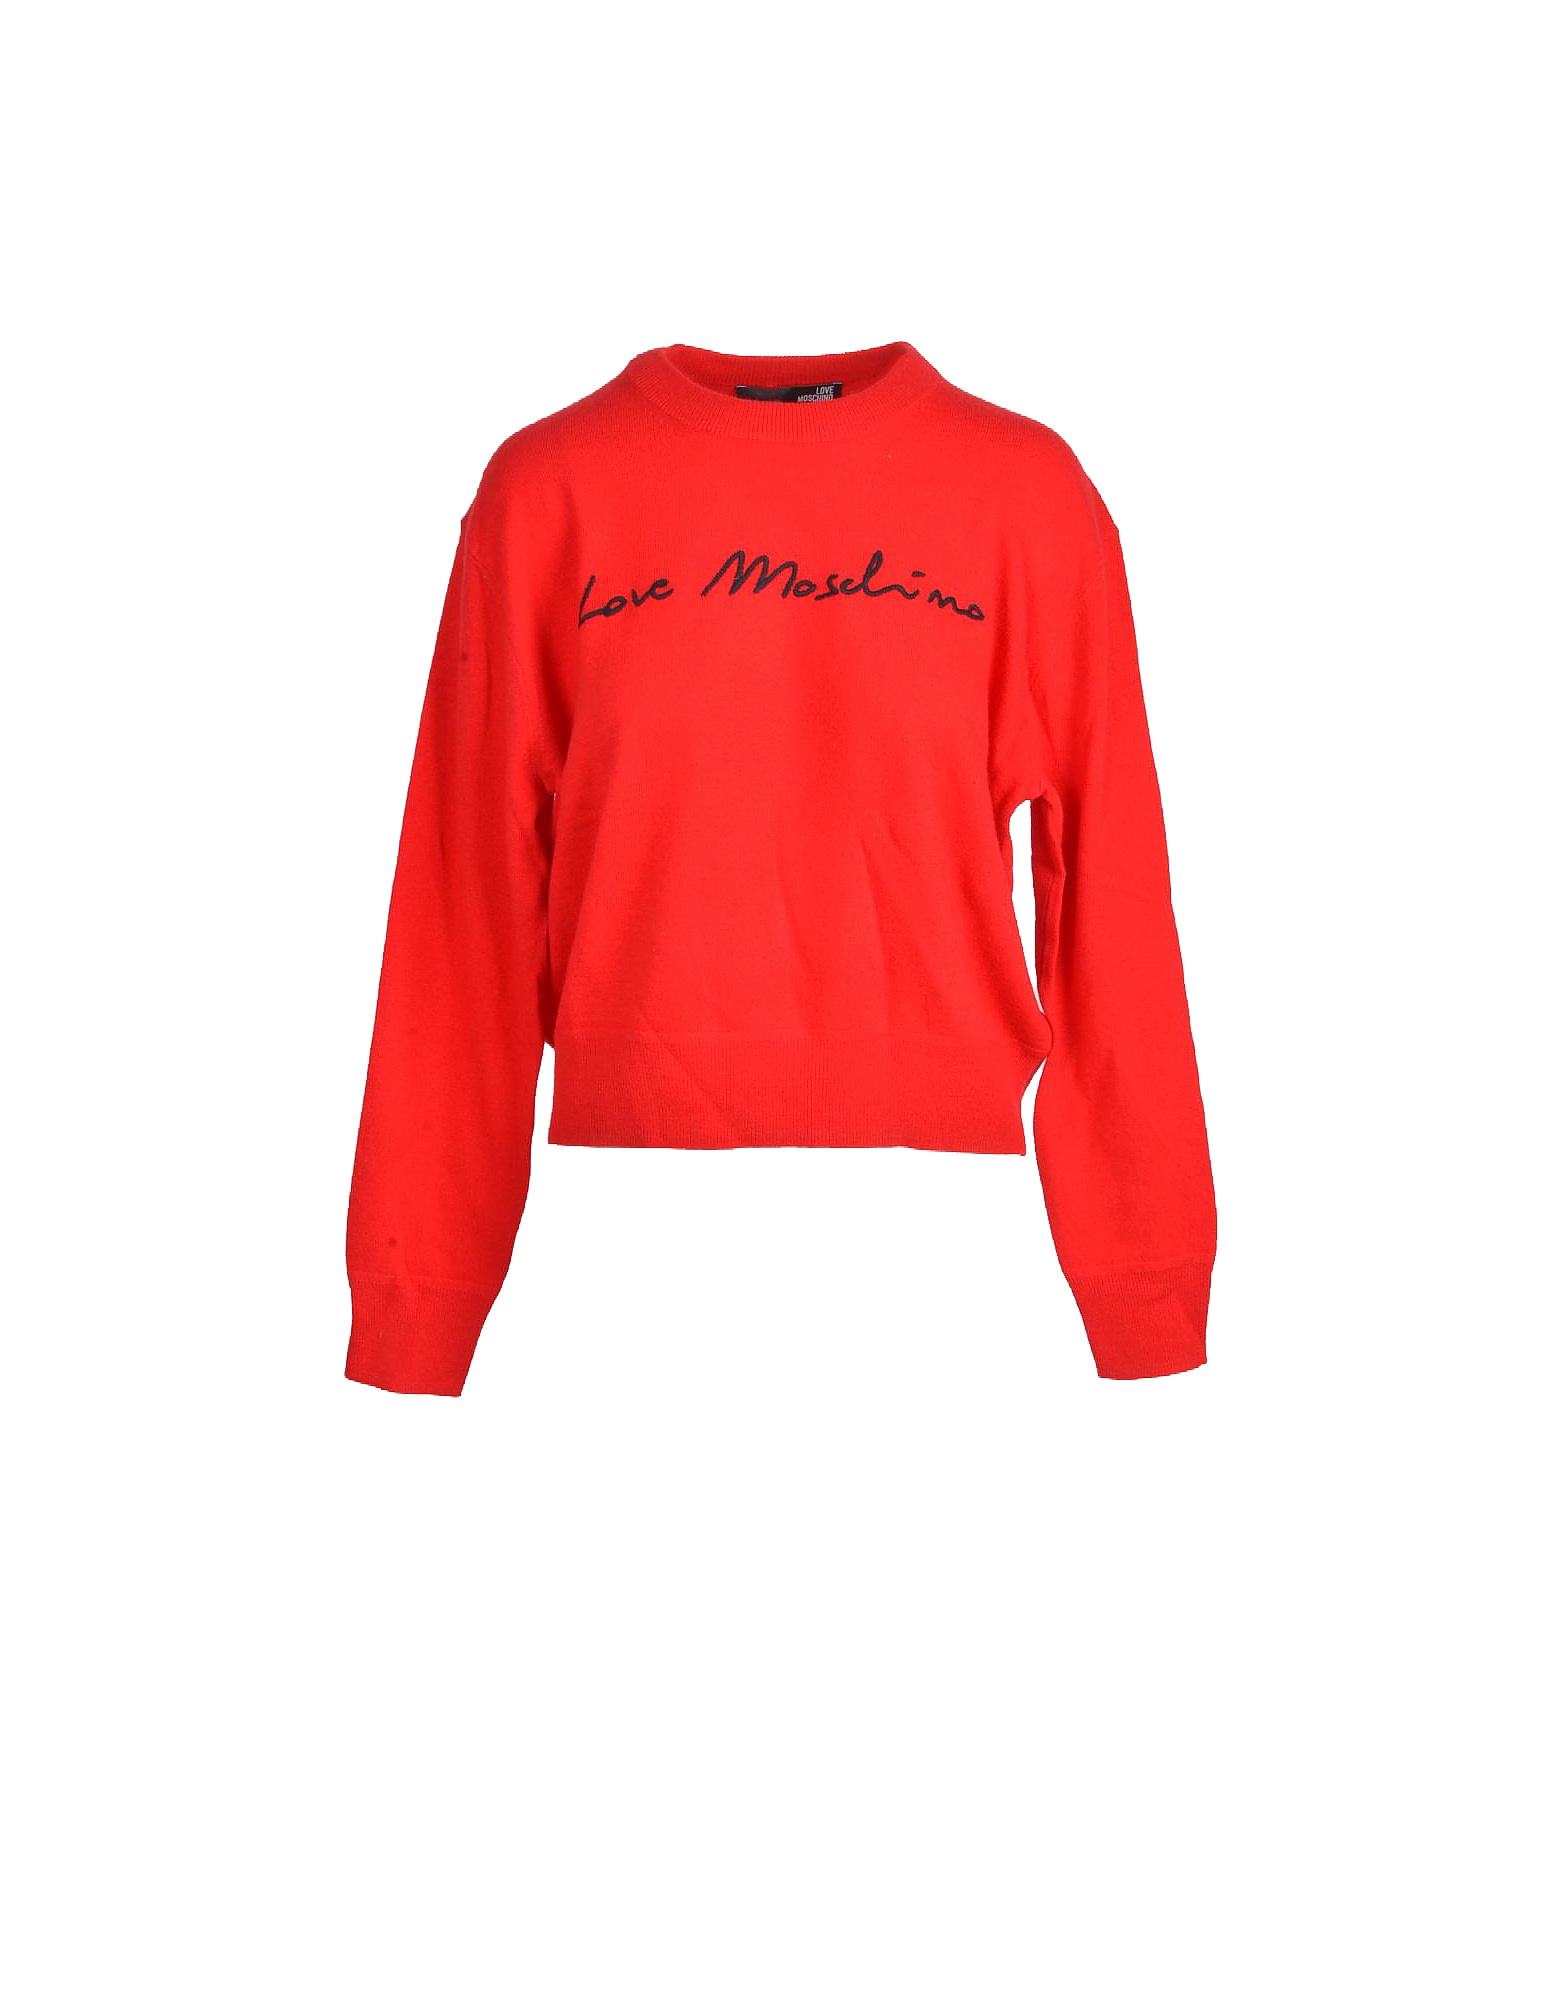 Love Moschino Womens Red Sweater